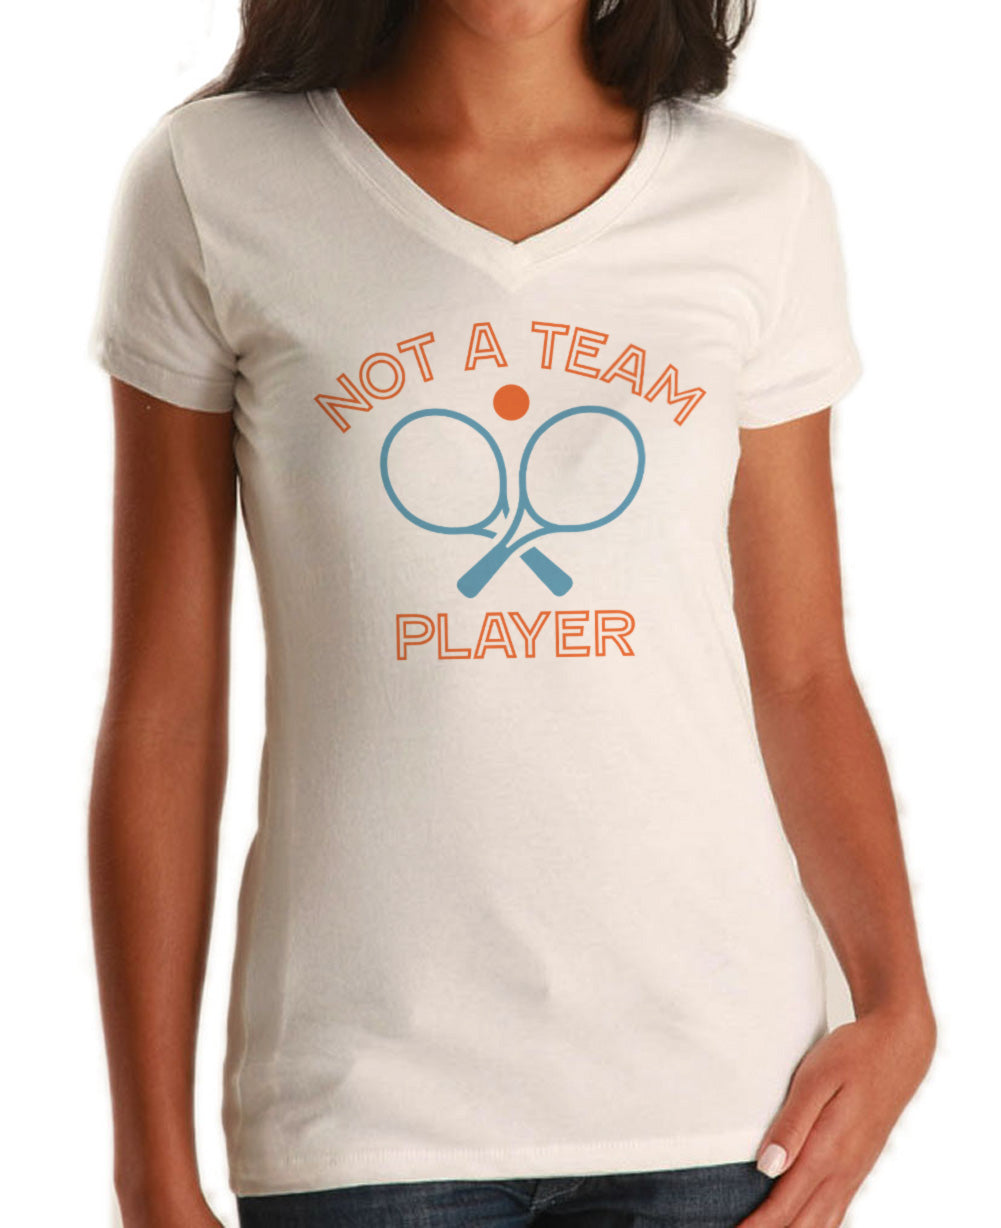 Women's Not a Team Player Vneck T-Shirt